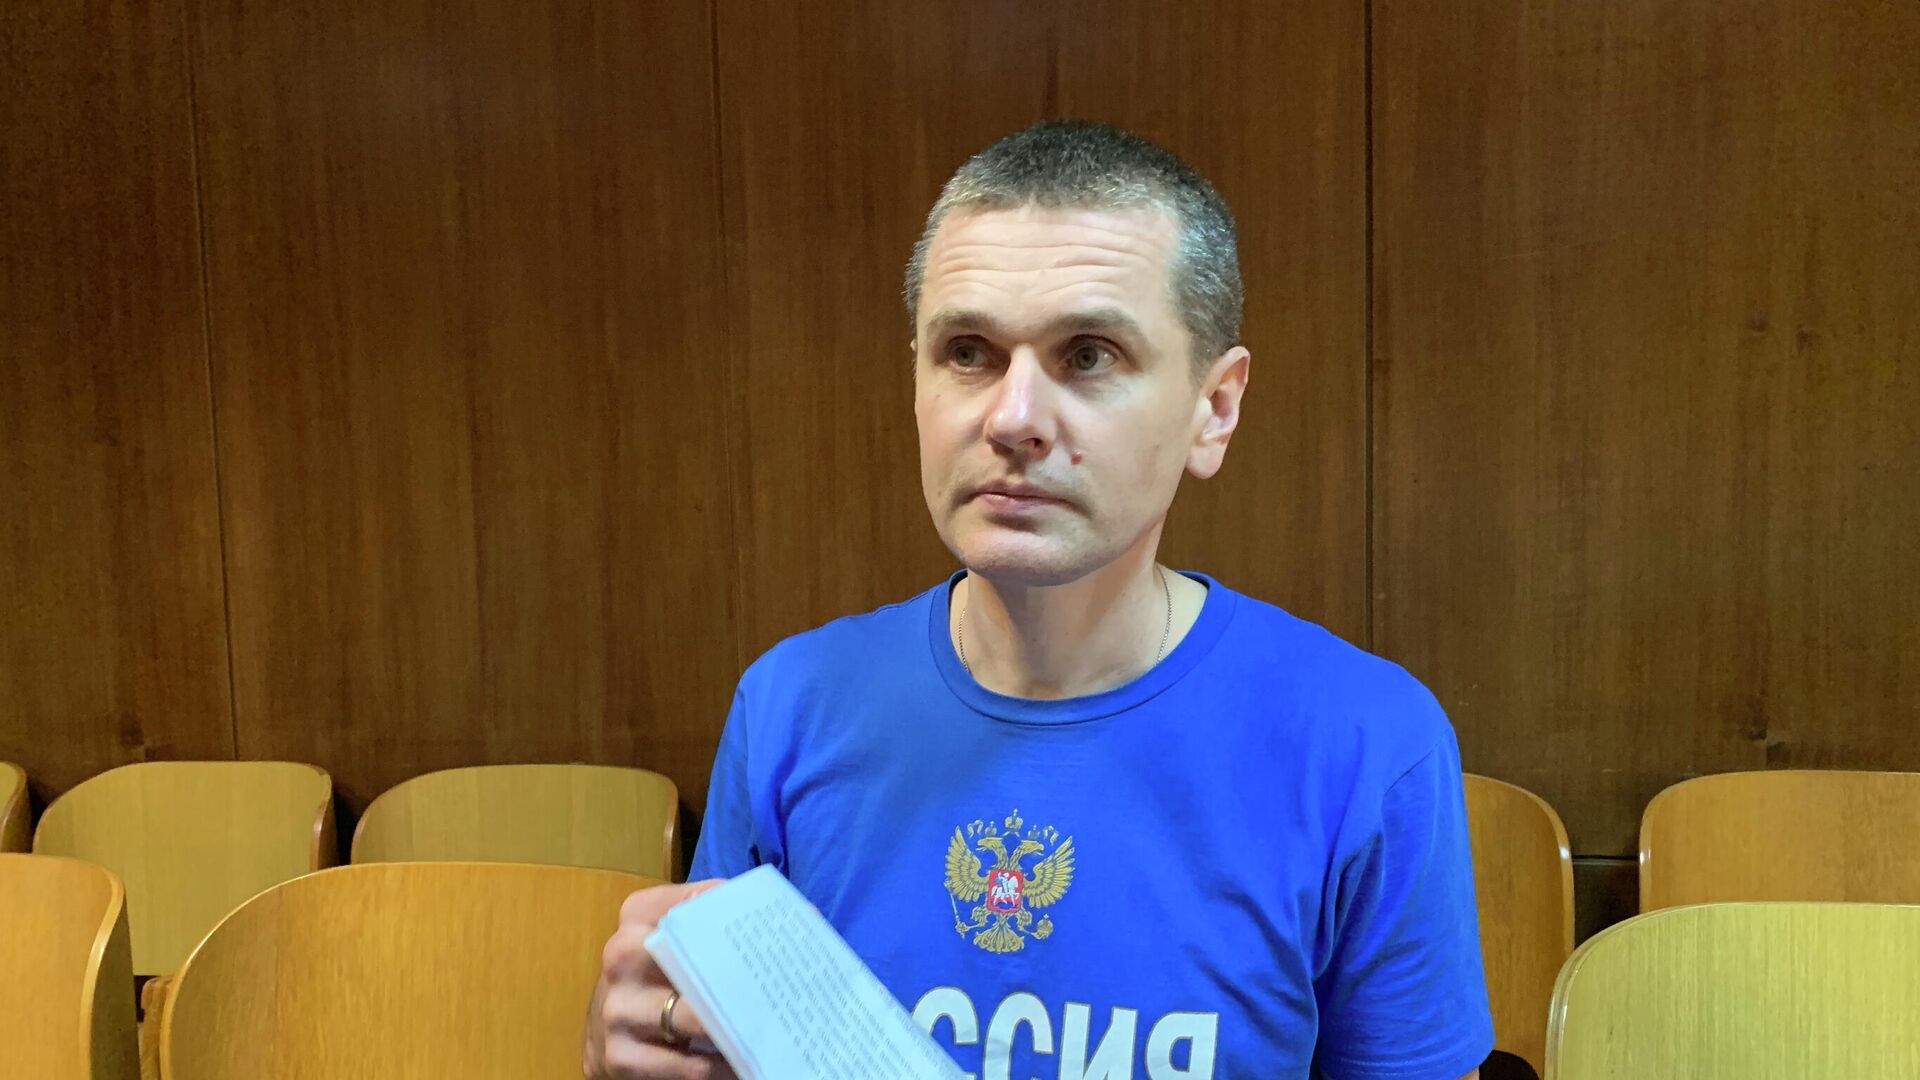 Арестованный в США россиянин Александр Винник признал вину